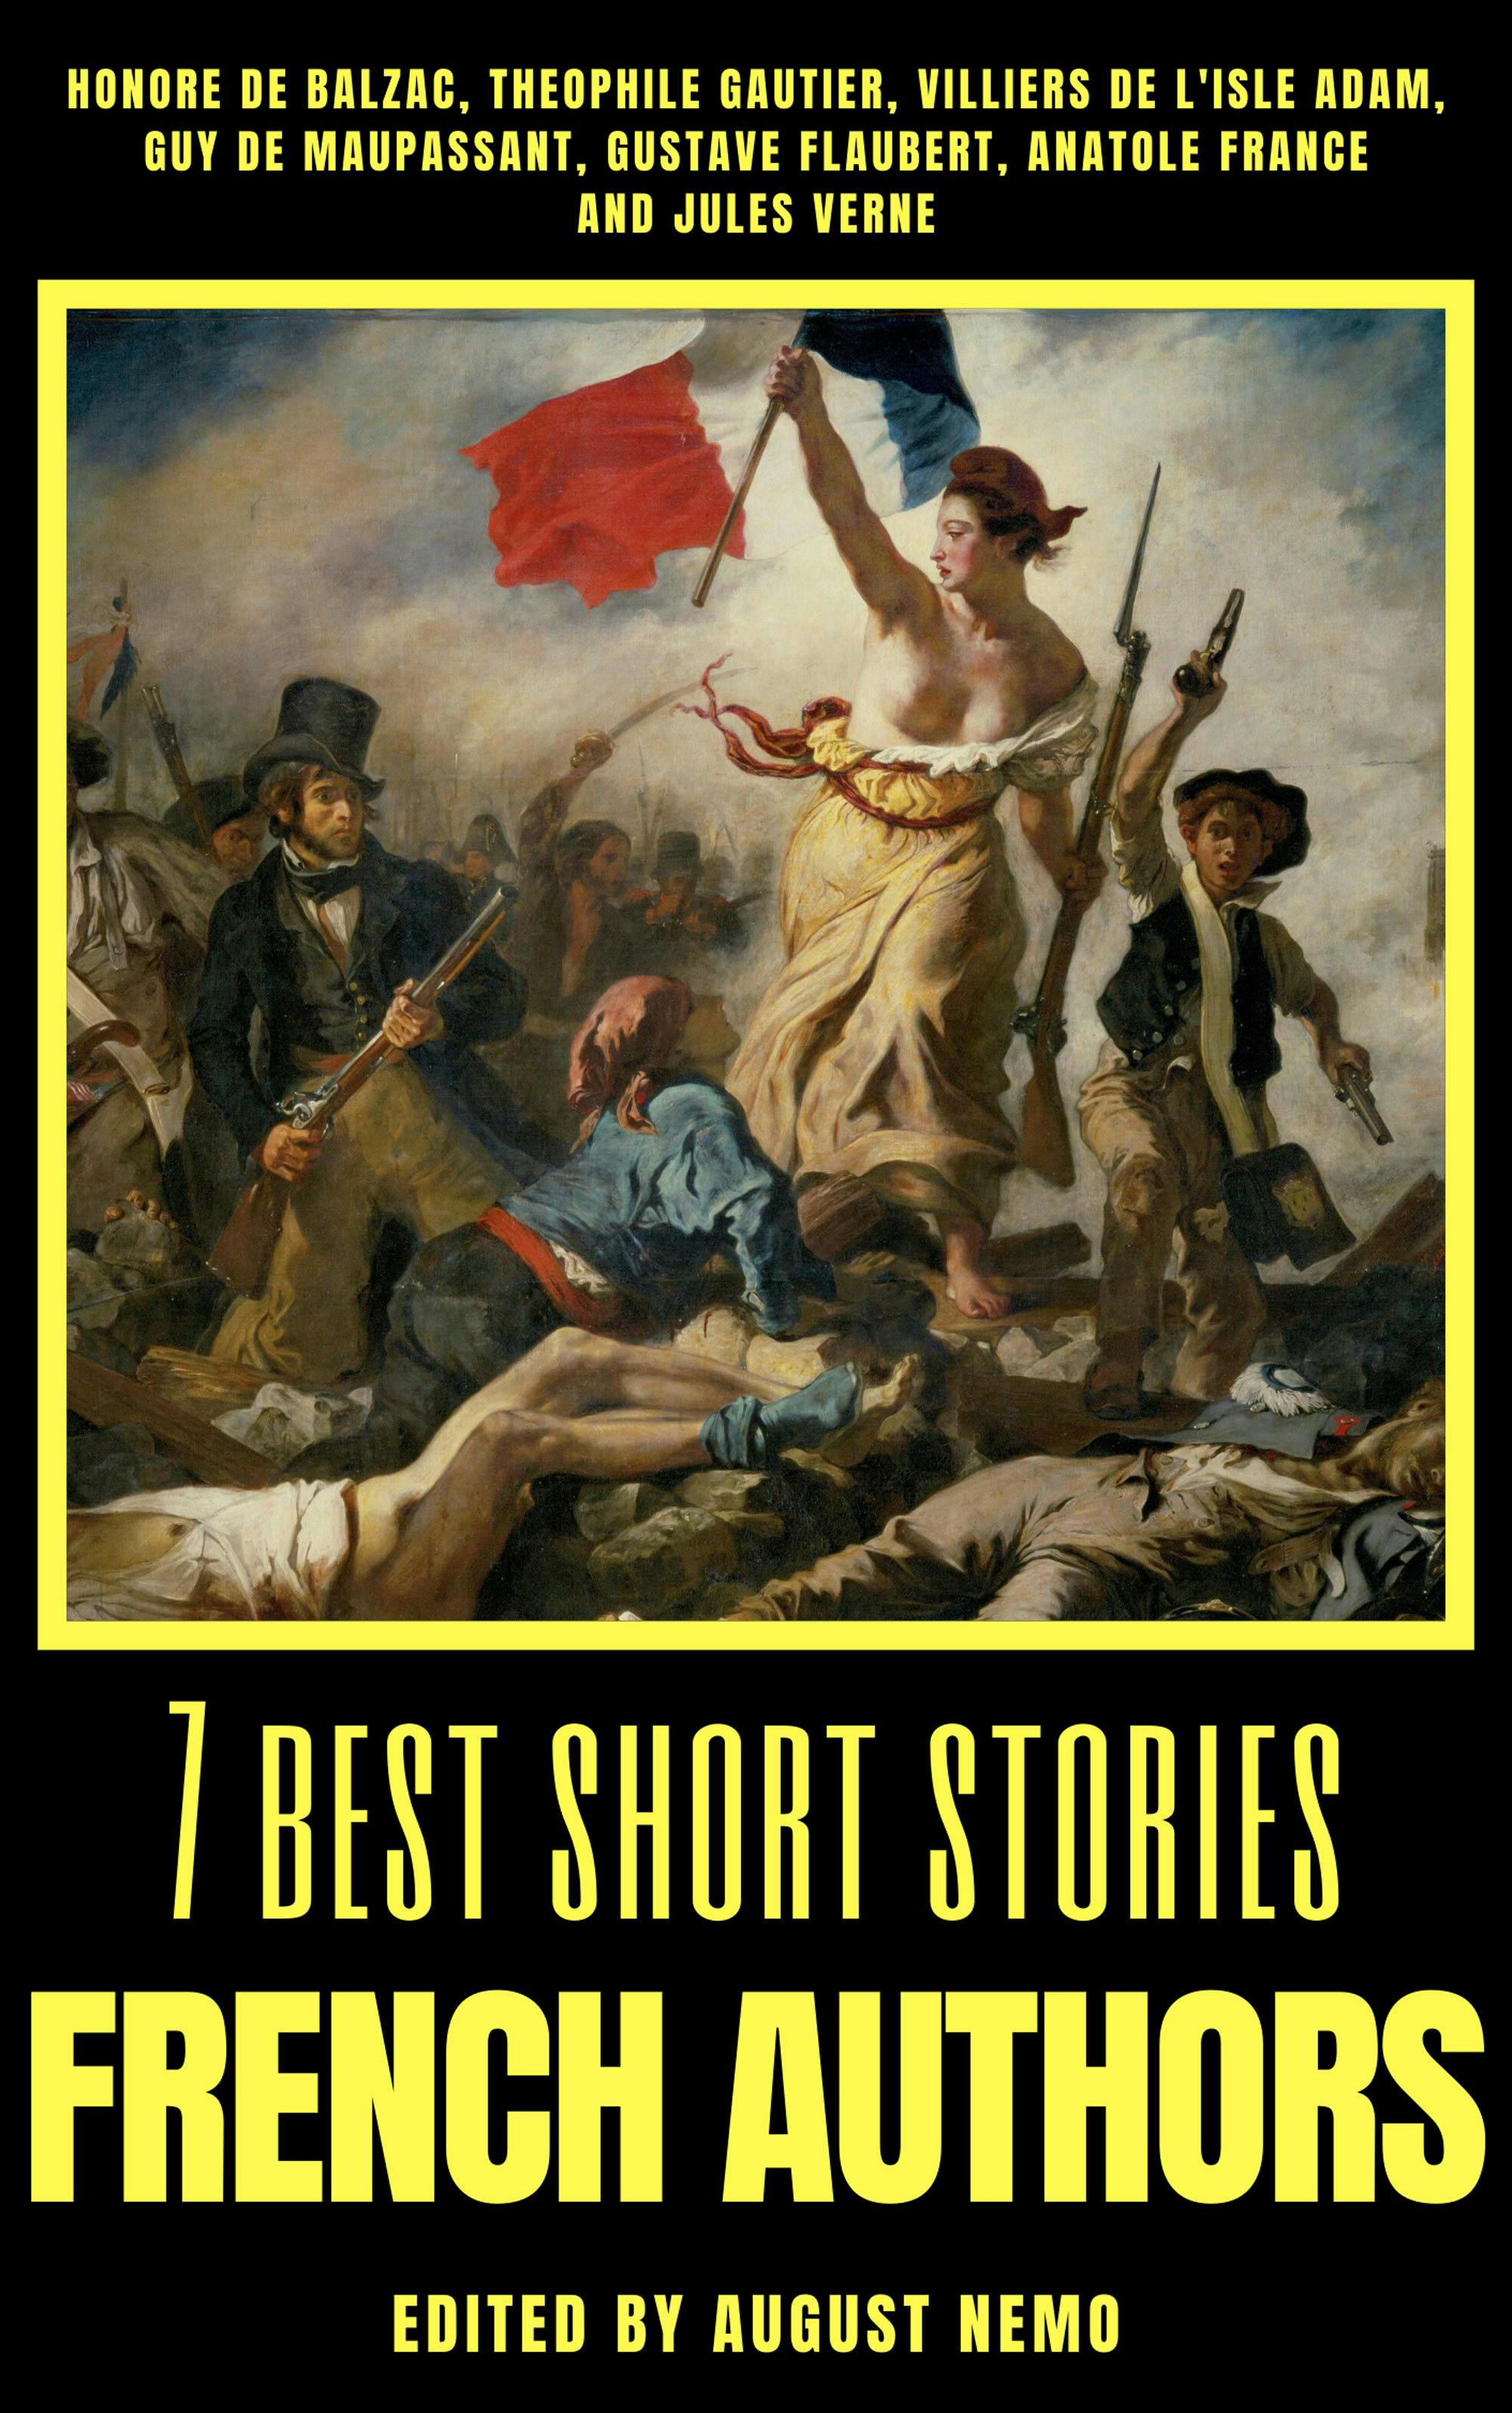 7 best short stories - French Authors - Honoré de Balzac, Villiers L'Isle de Adam, Guy de Maupassant, Gustave Flaubert, Anatole France, Théophile Gautier, Jules Verne, August Nemo